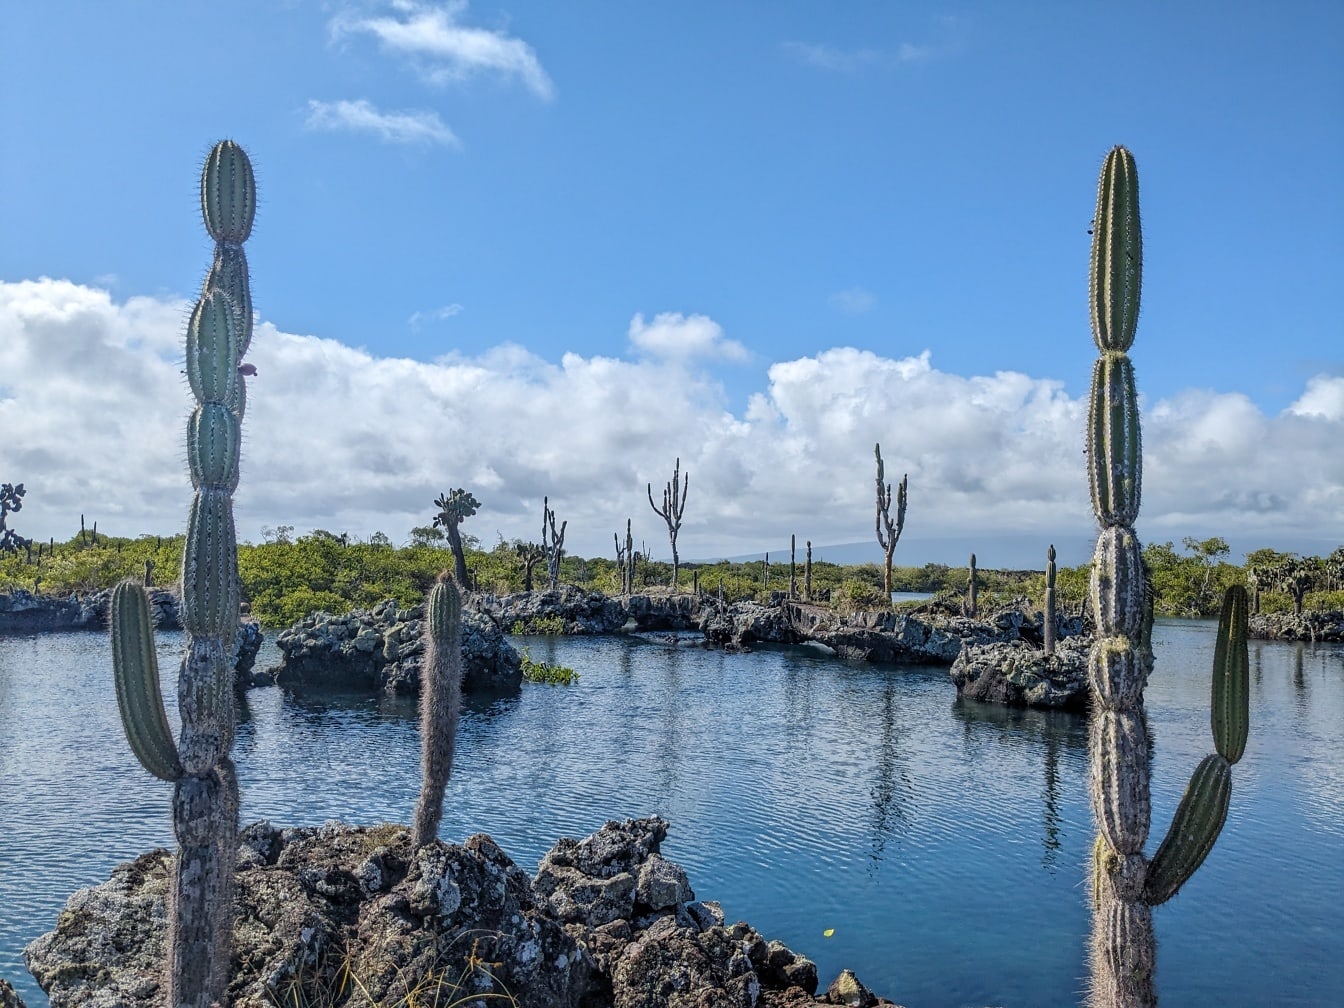 Величественный пейзаж в природном парке Галапагосских островов с опунцией (Opuntia galapageia) субтропическим видом кактусов